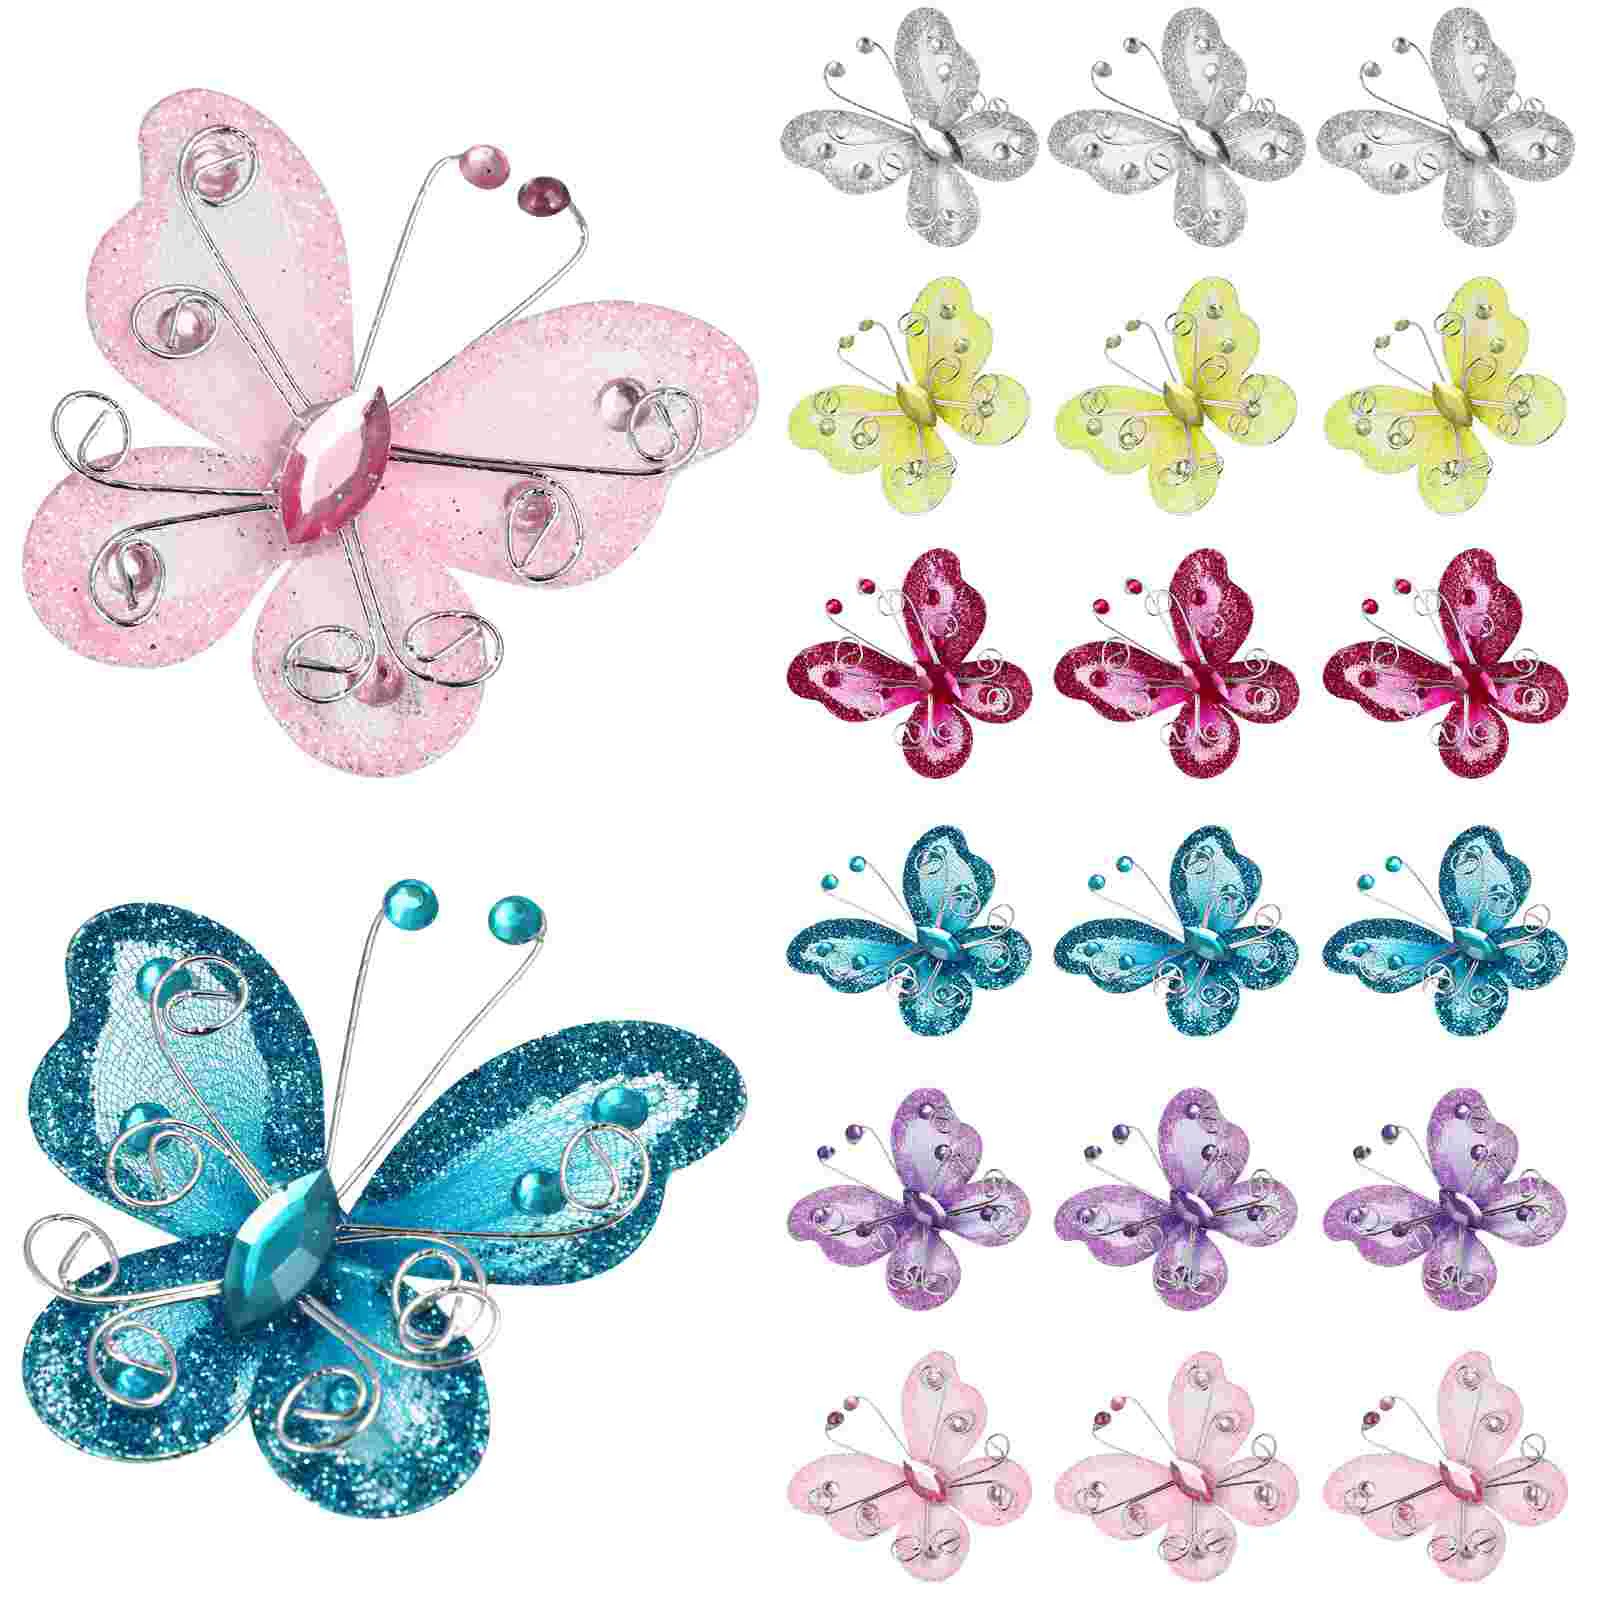 

36 Pcs Decor Fake Butterflies Home Butterfly Decorations Silk Screen Bouquet Accessories Organza Wall